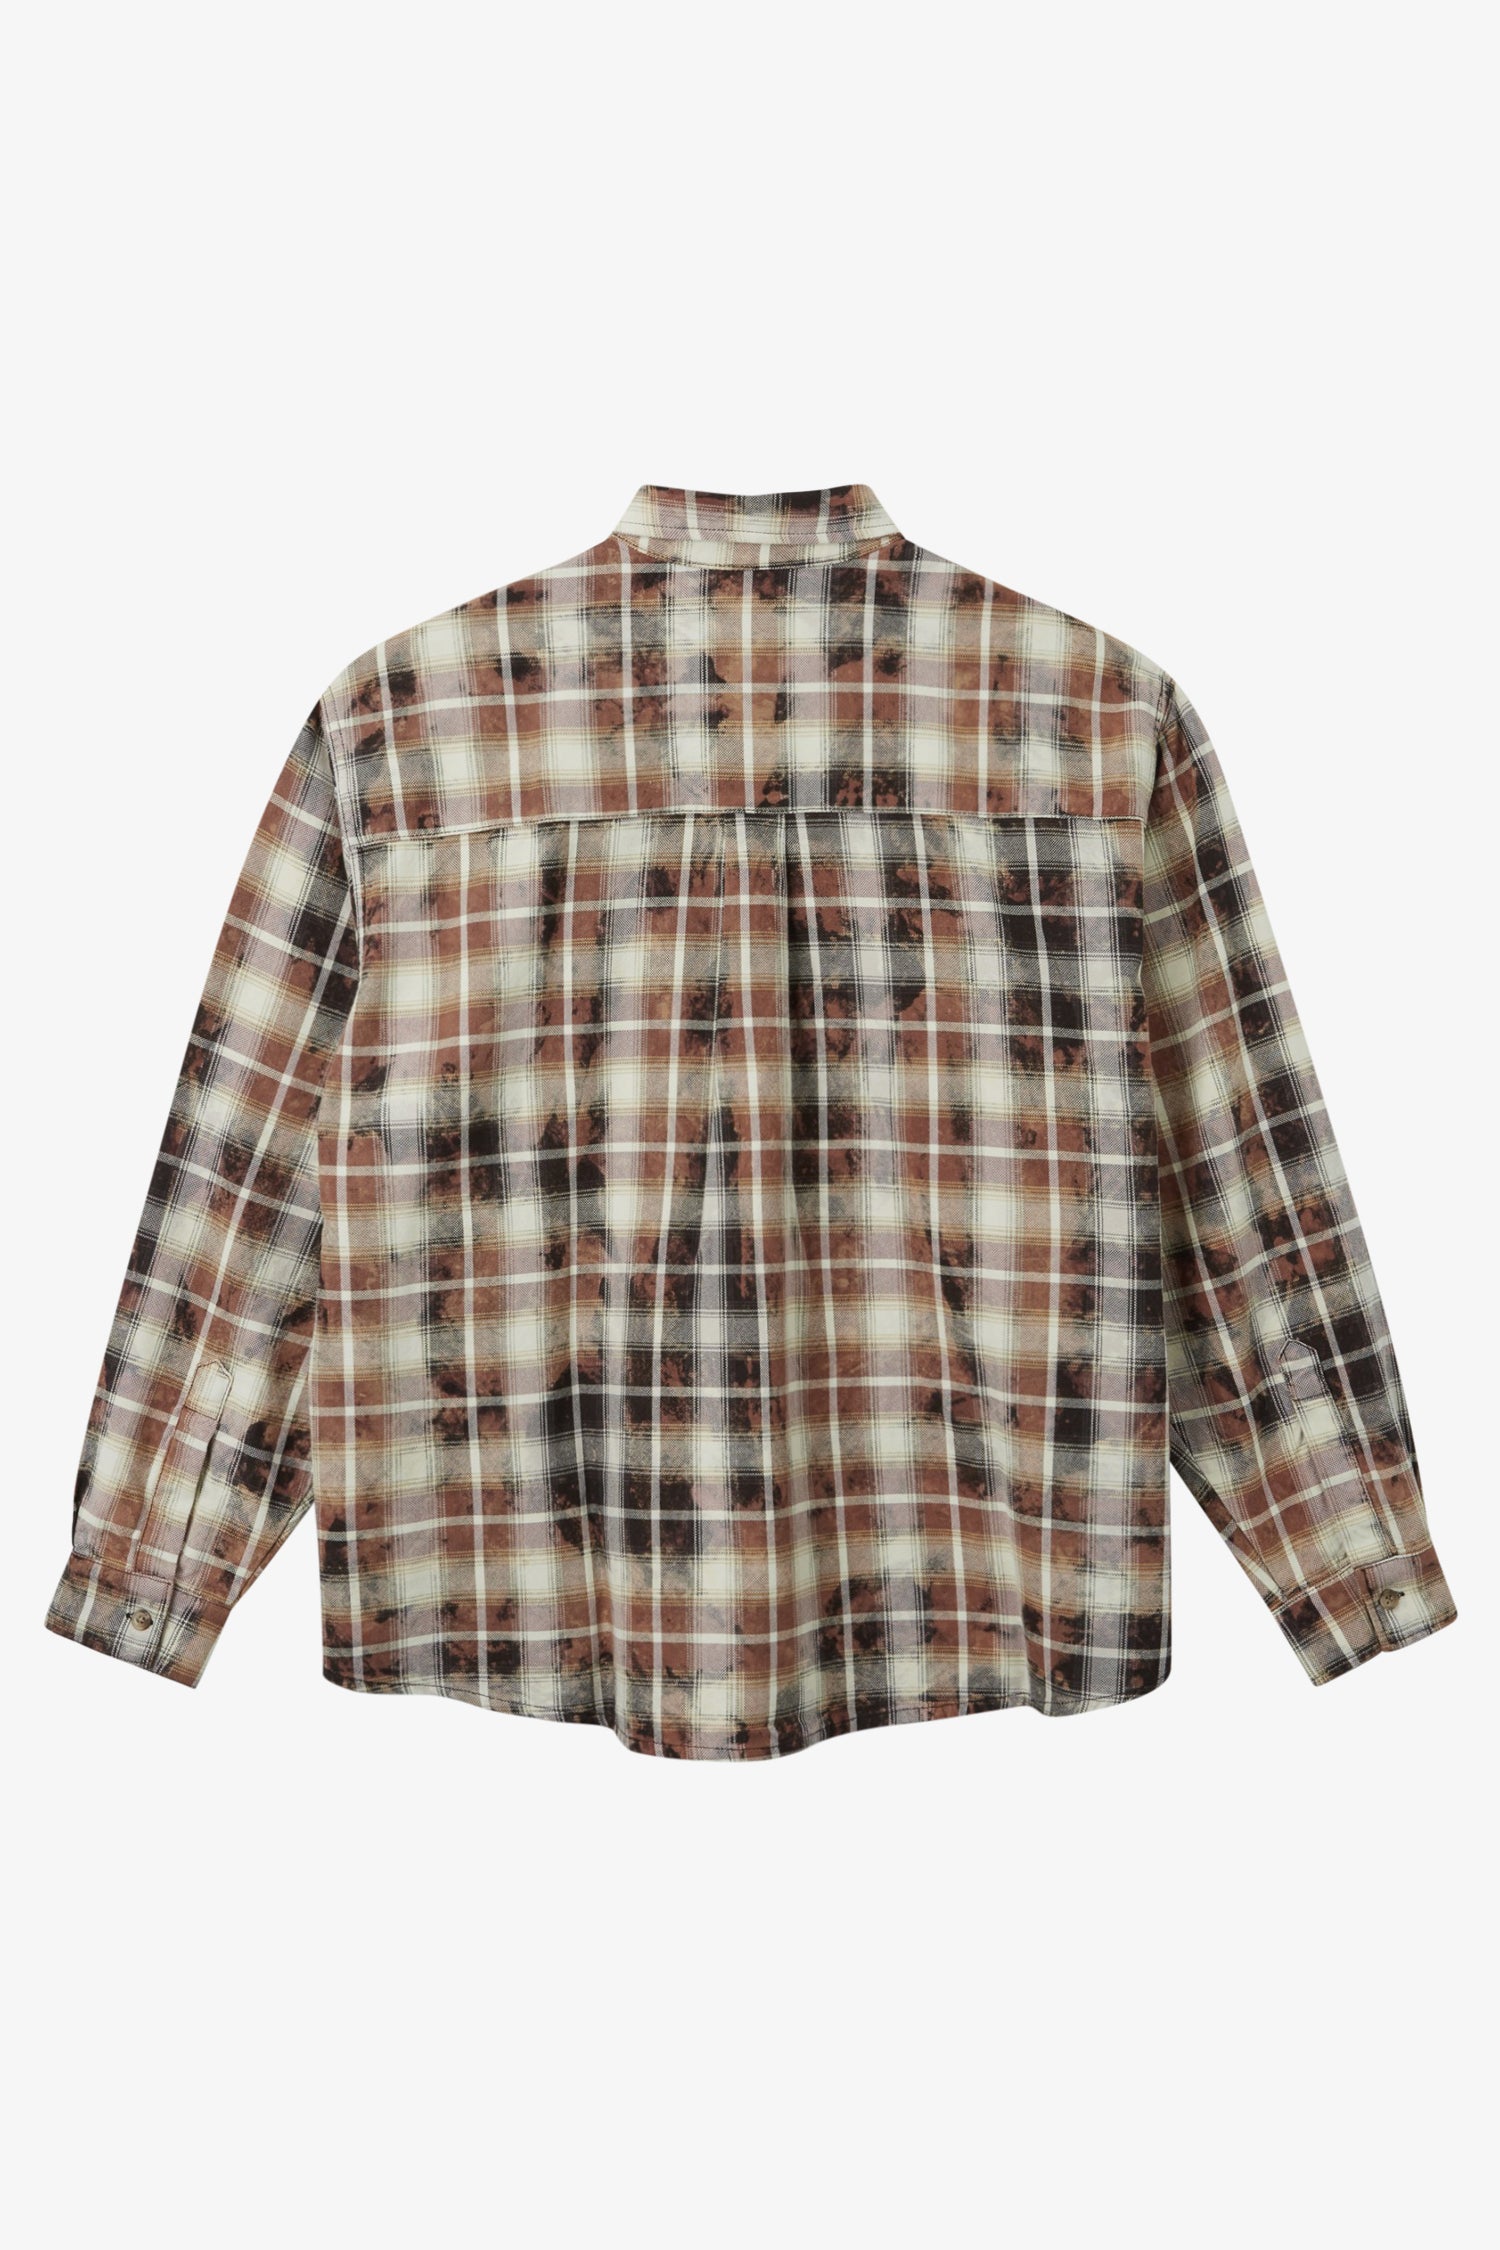 Selectshop FRAME - RASSVET Bleach Flannel Shirt Shirts Dubai